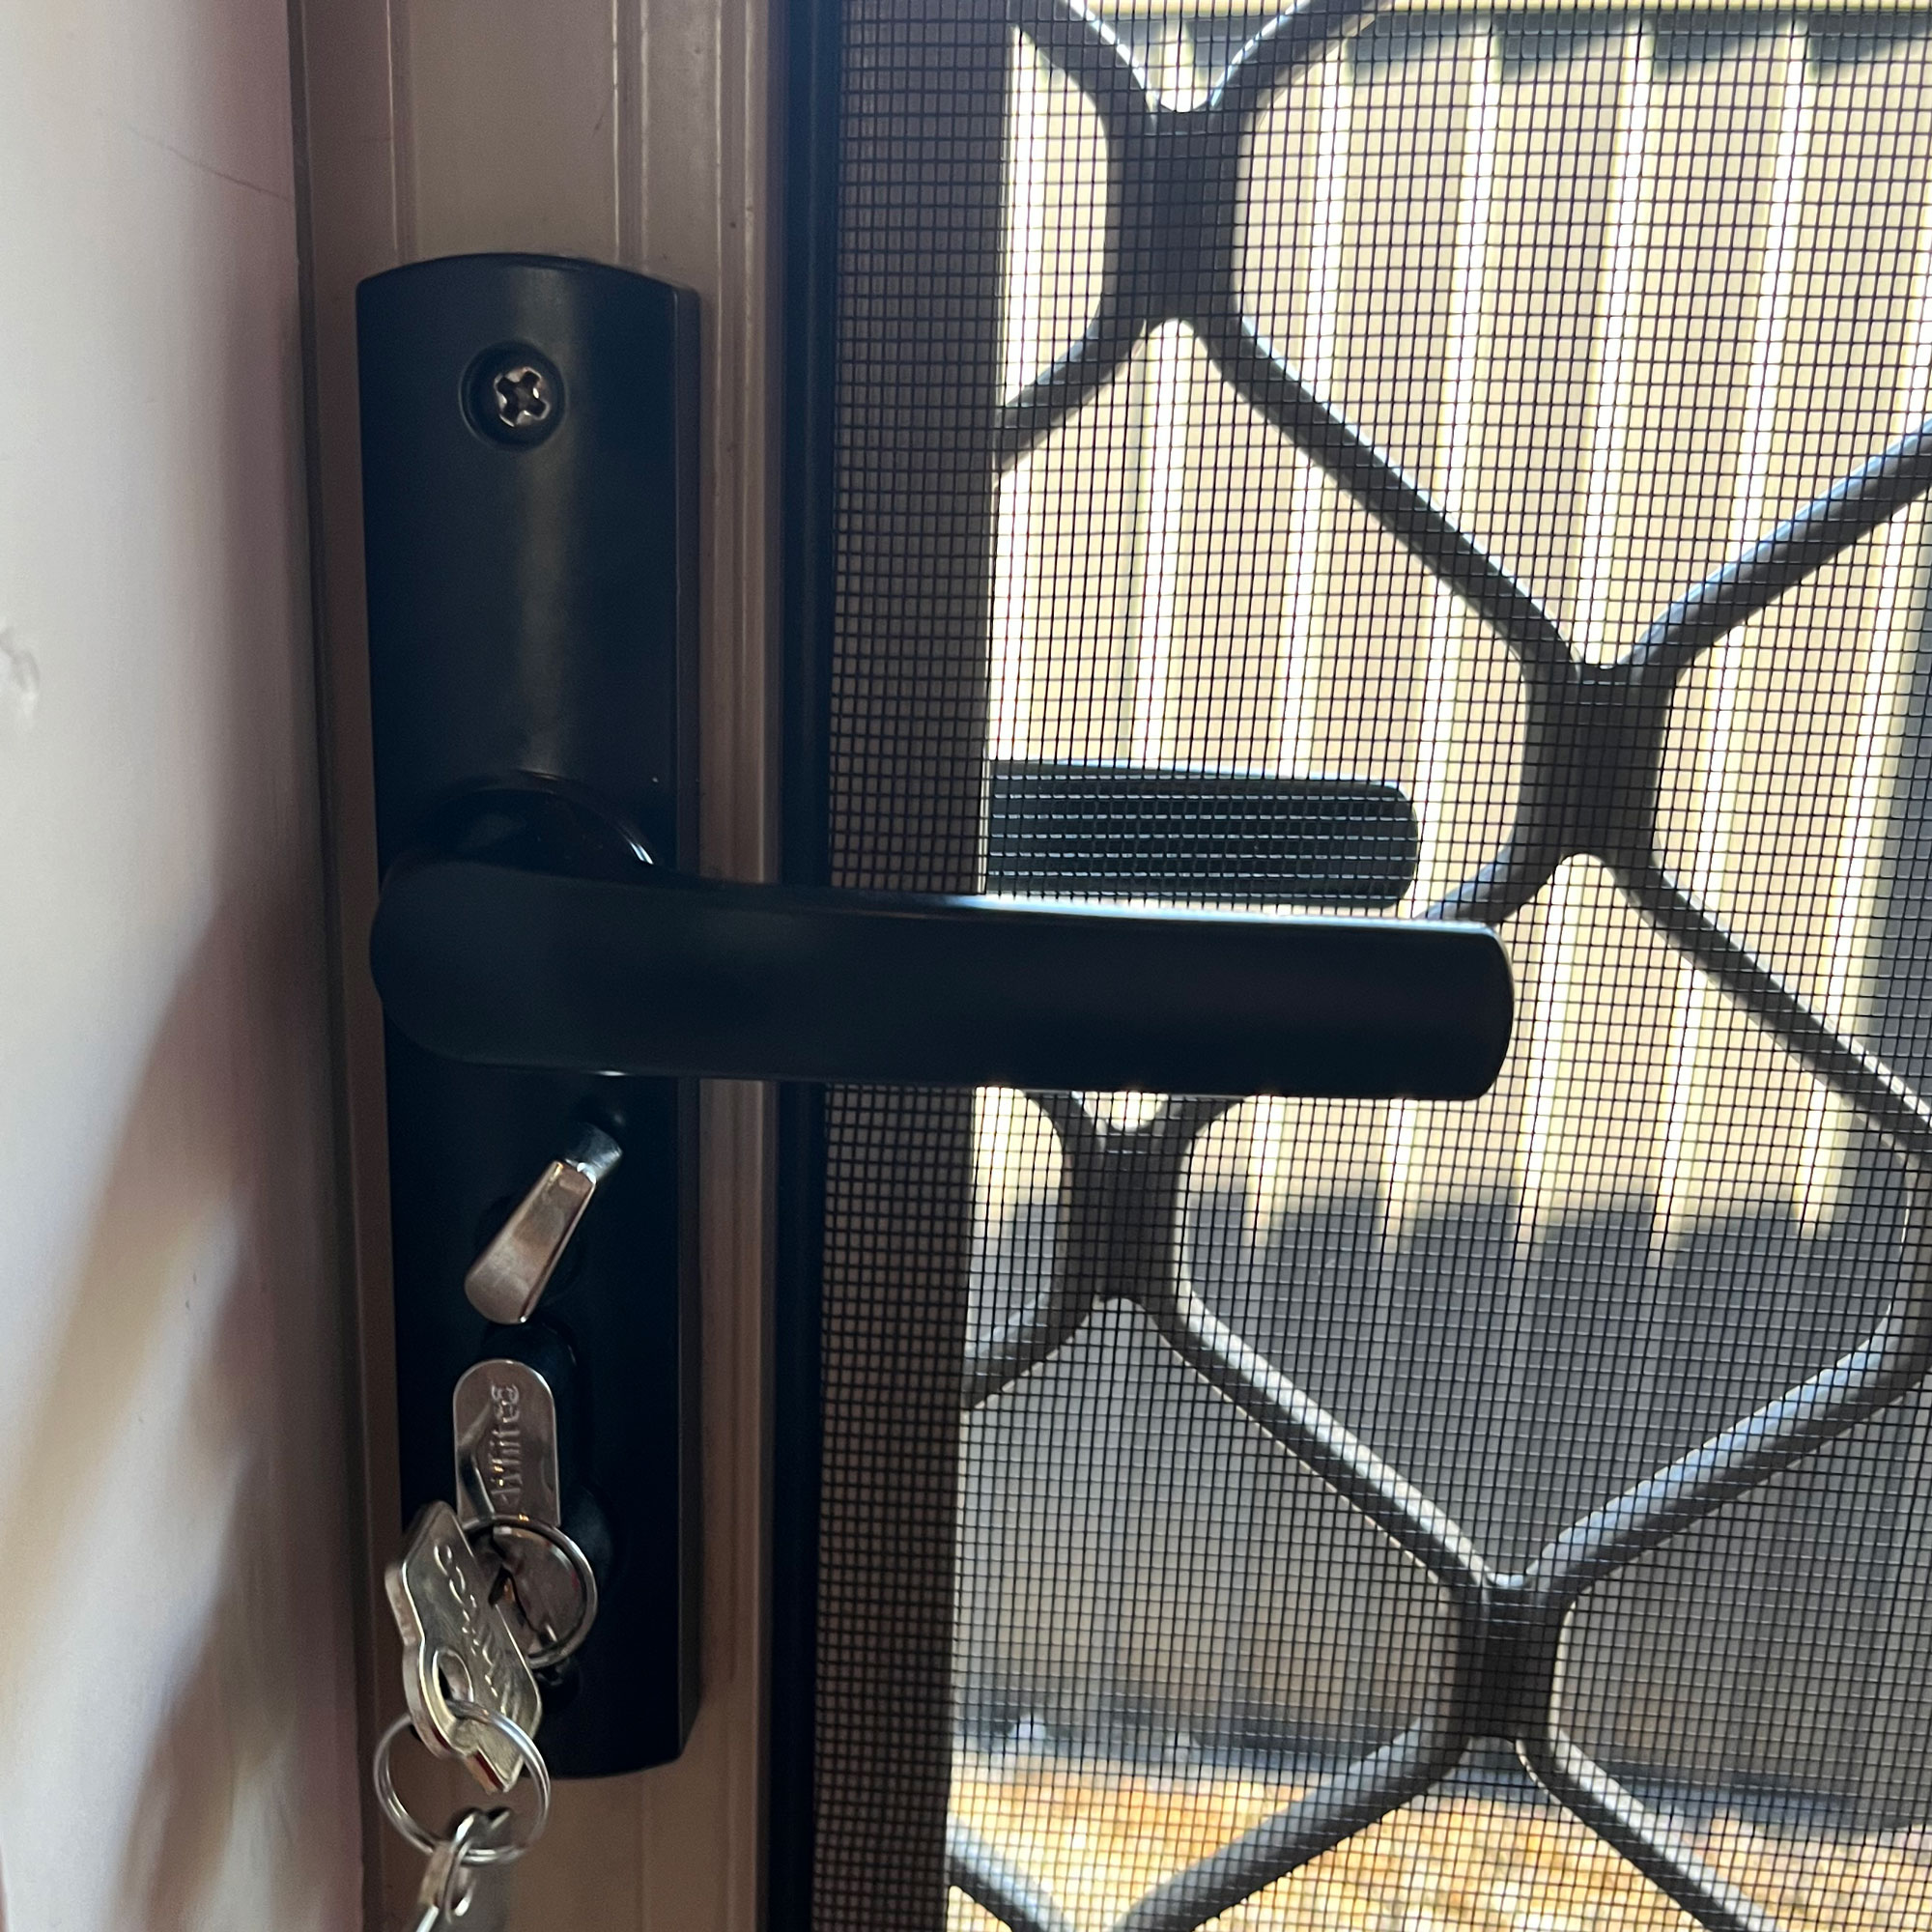 security screen door lock replacement